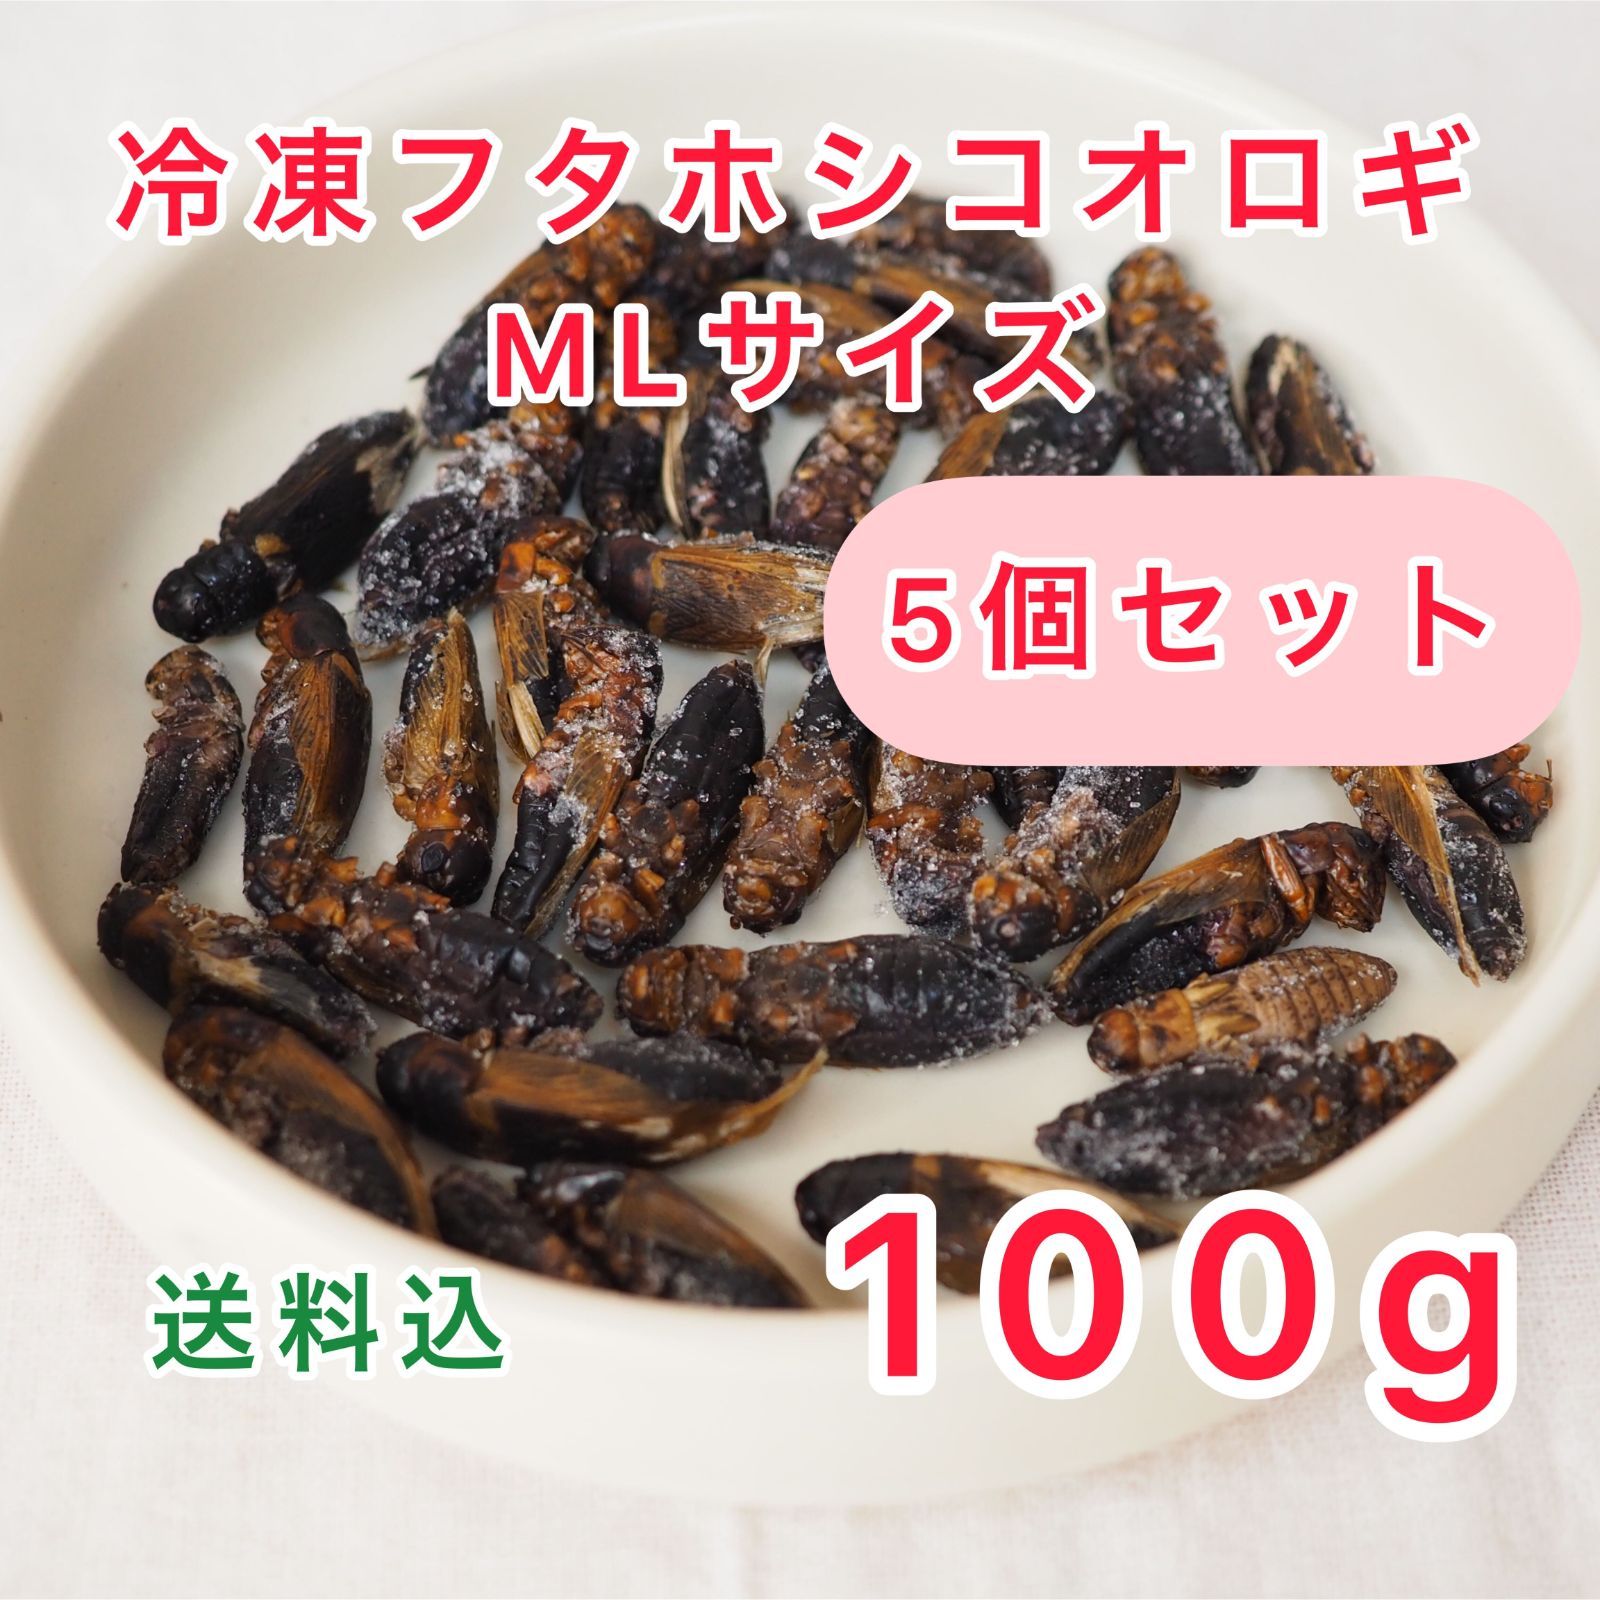 売上超高品質 冷凍 コオロギ 脚部除去済 Lサイズ 2kg | tonky.jp